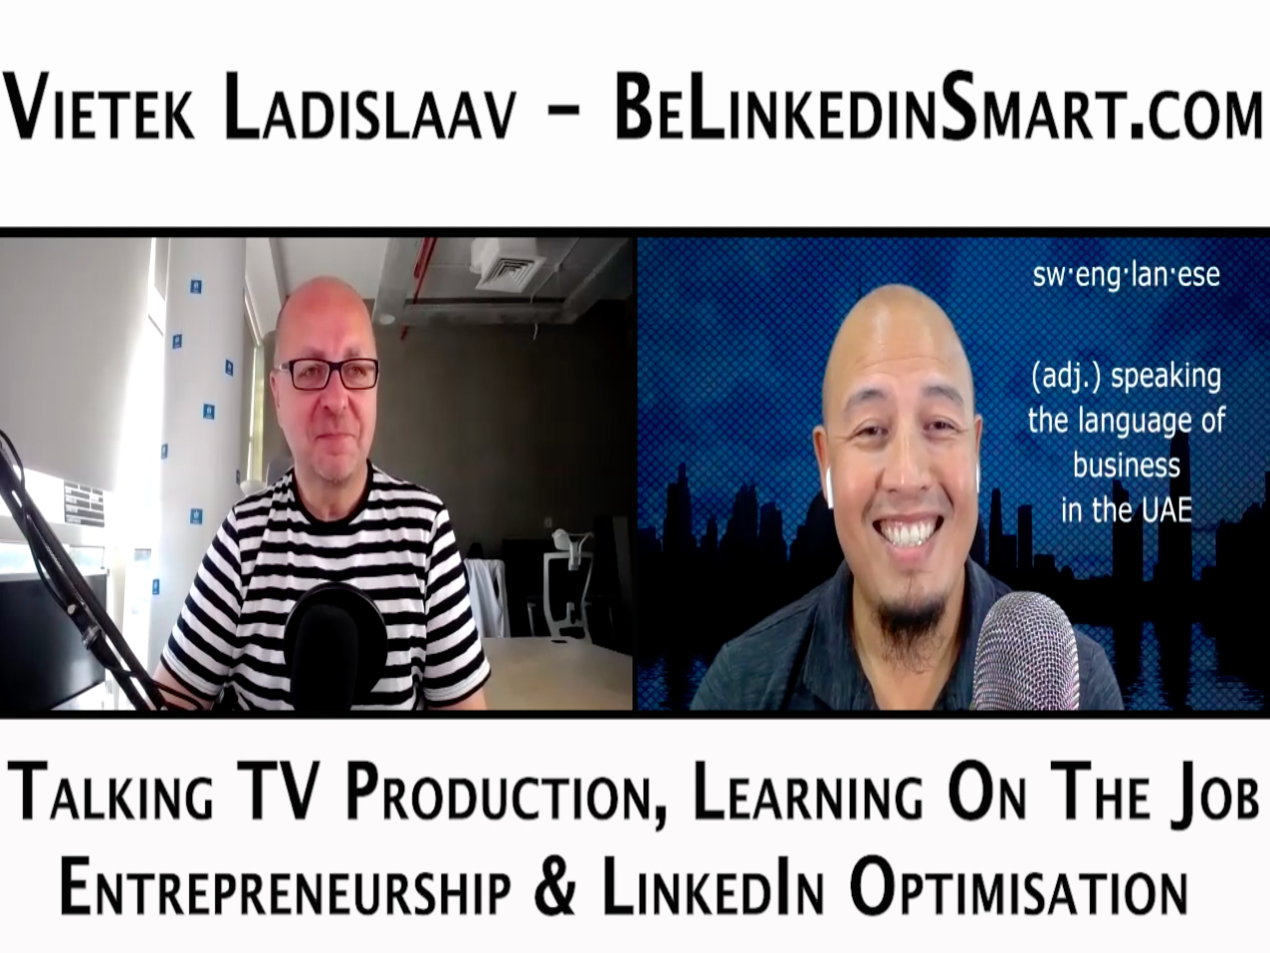 Episode 58 – Vietek Ladislaav – Be LinkedIn Smart